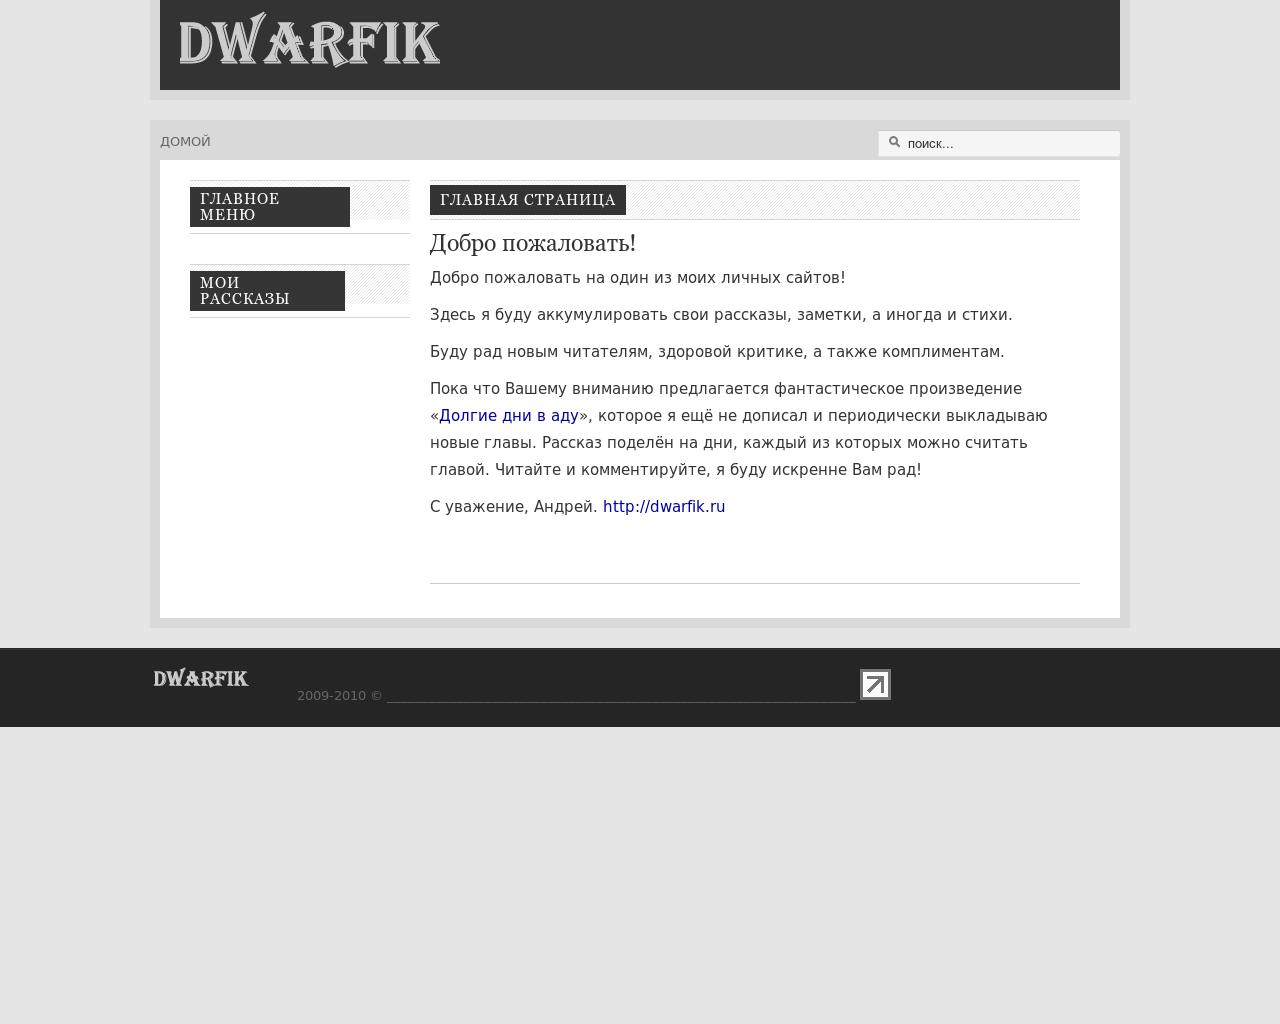 Изображение сайта dwarfik.ru в разрешении 1280x1024